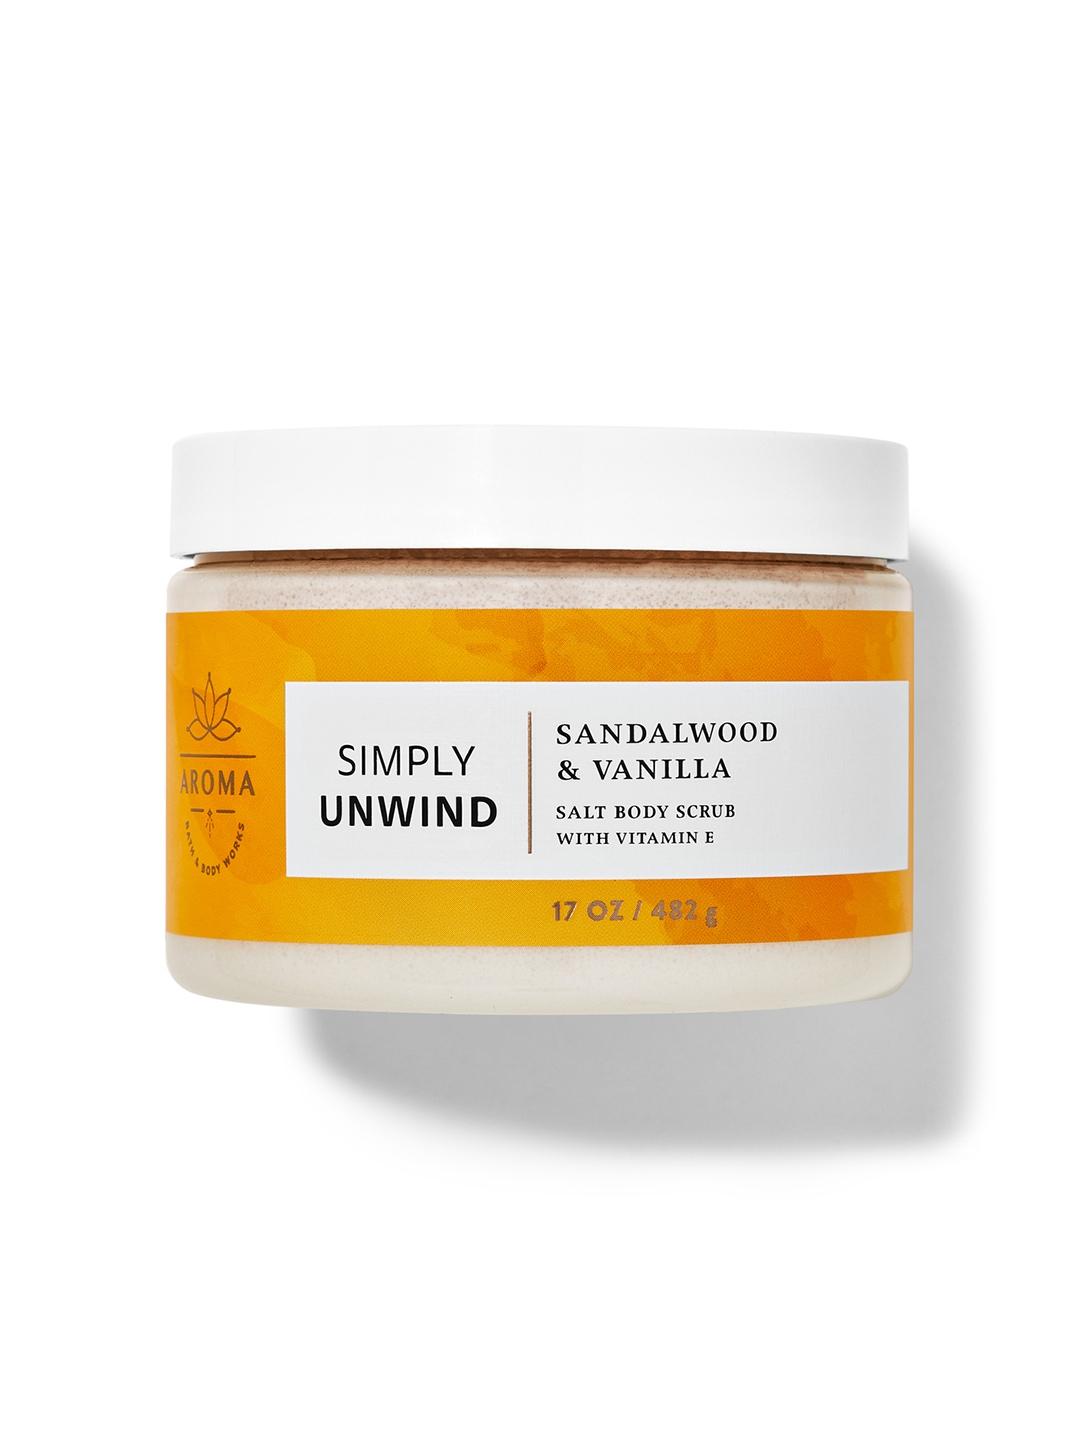 Bath & Body Works Simply Unwind Sandalwood & Vanilla Salt Body Scrub with Vitamin E - 482g